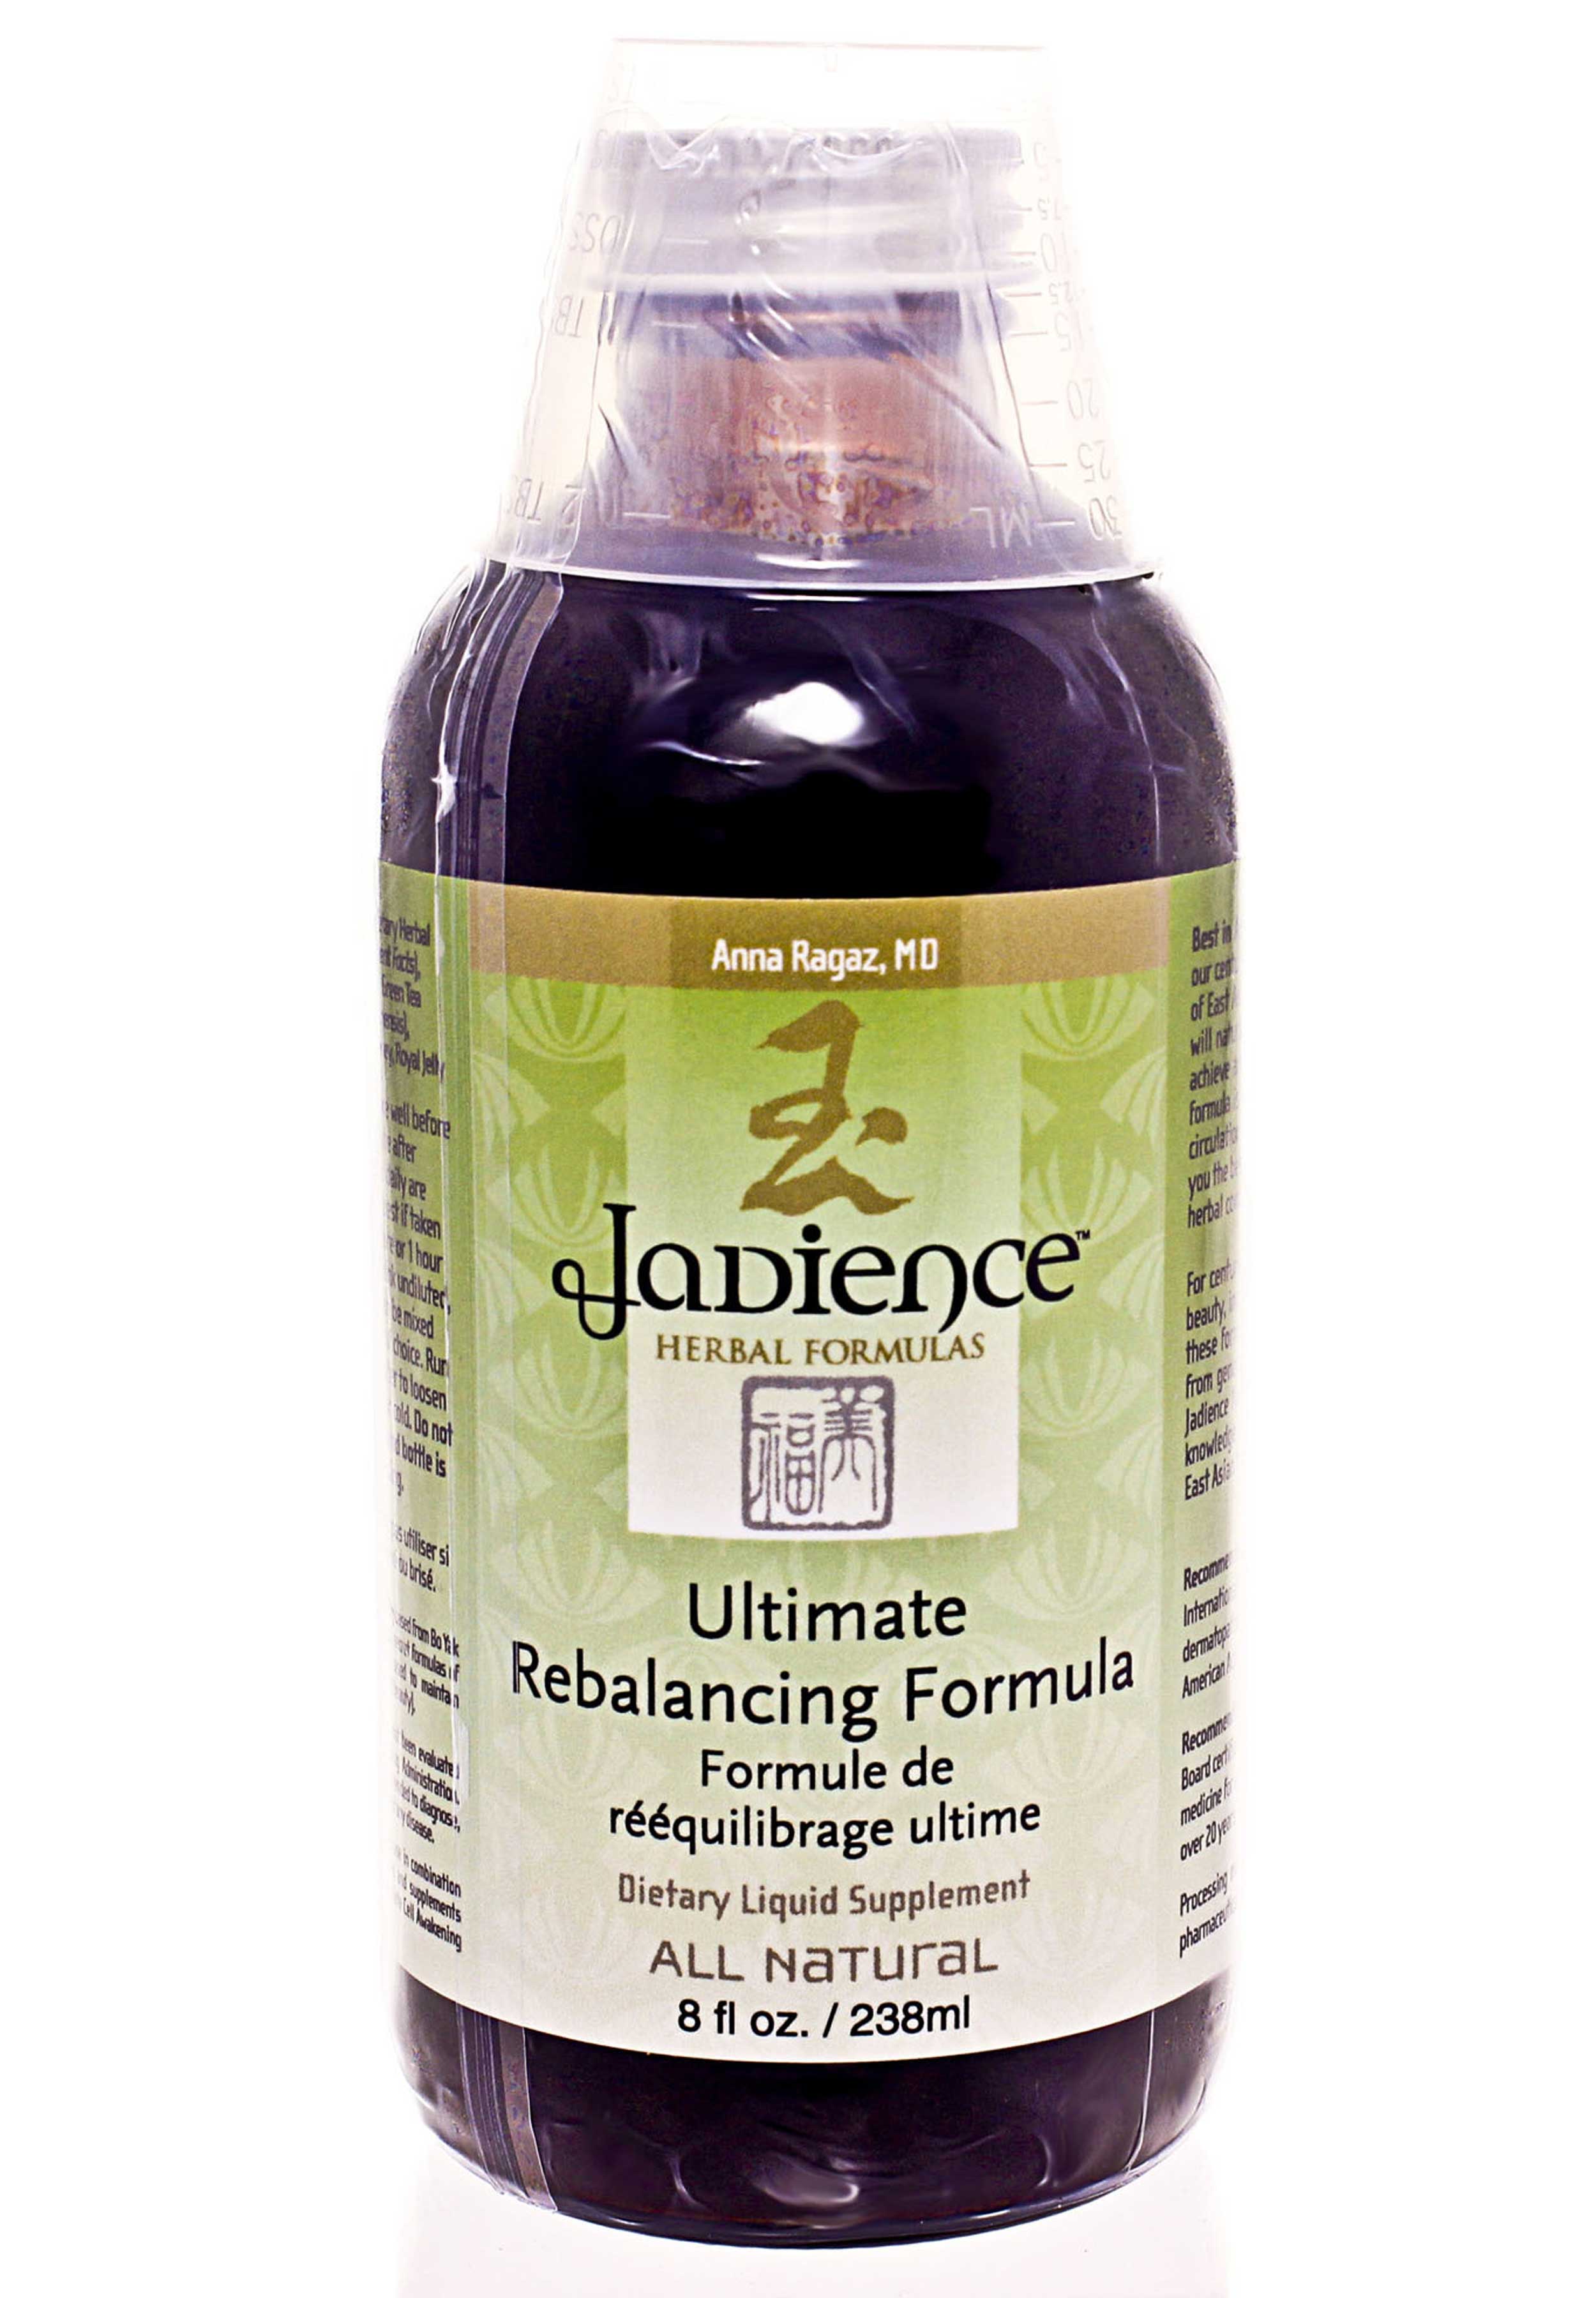 Jadience Herbal Formulas Ultimate Rebalancing Formula (Internal Supplement)